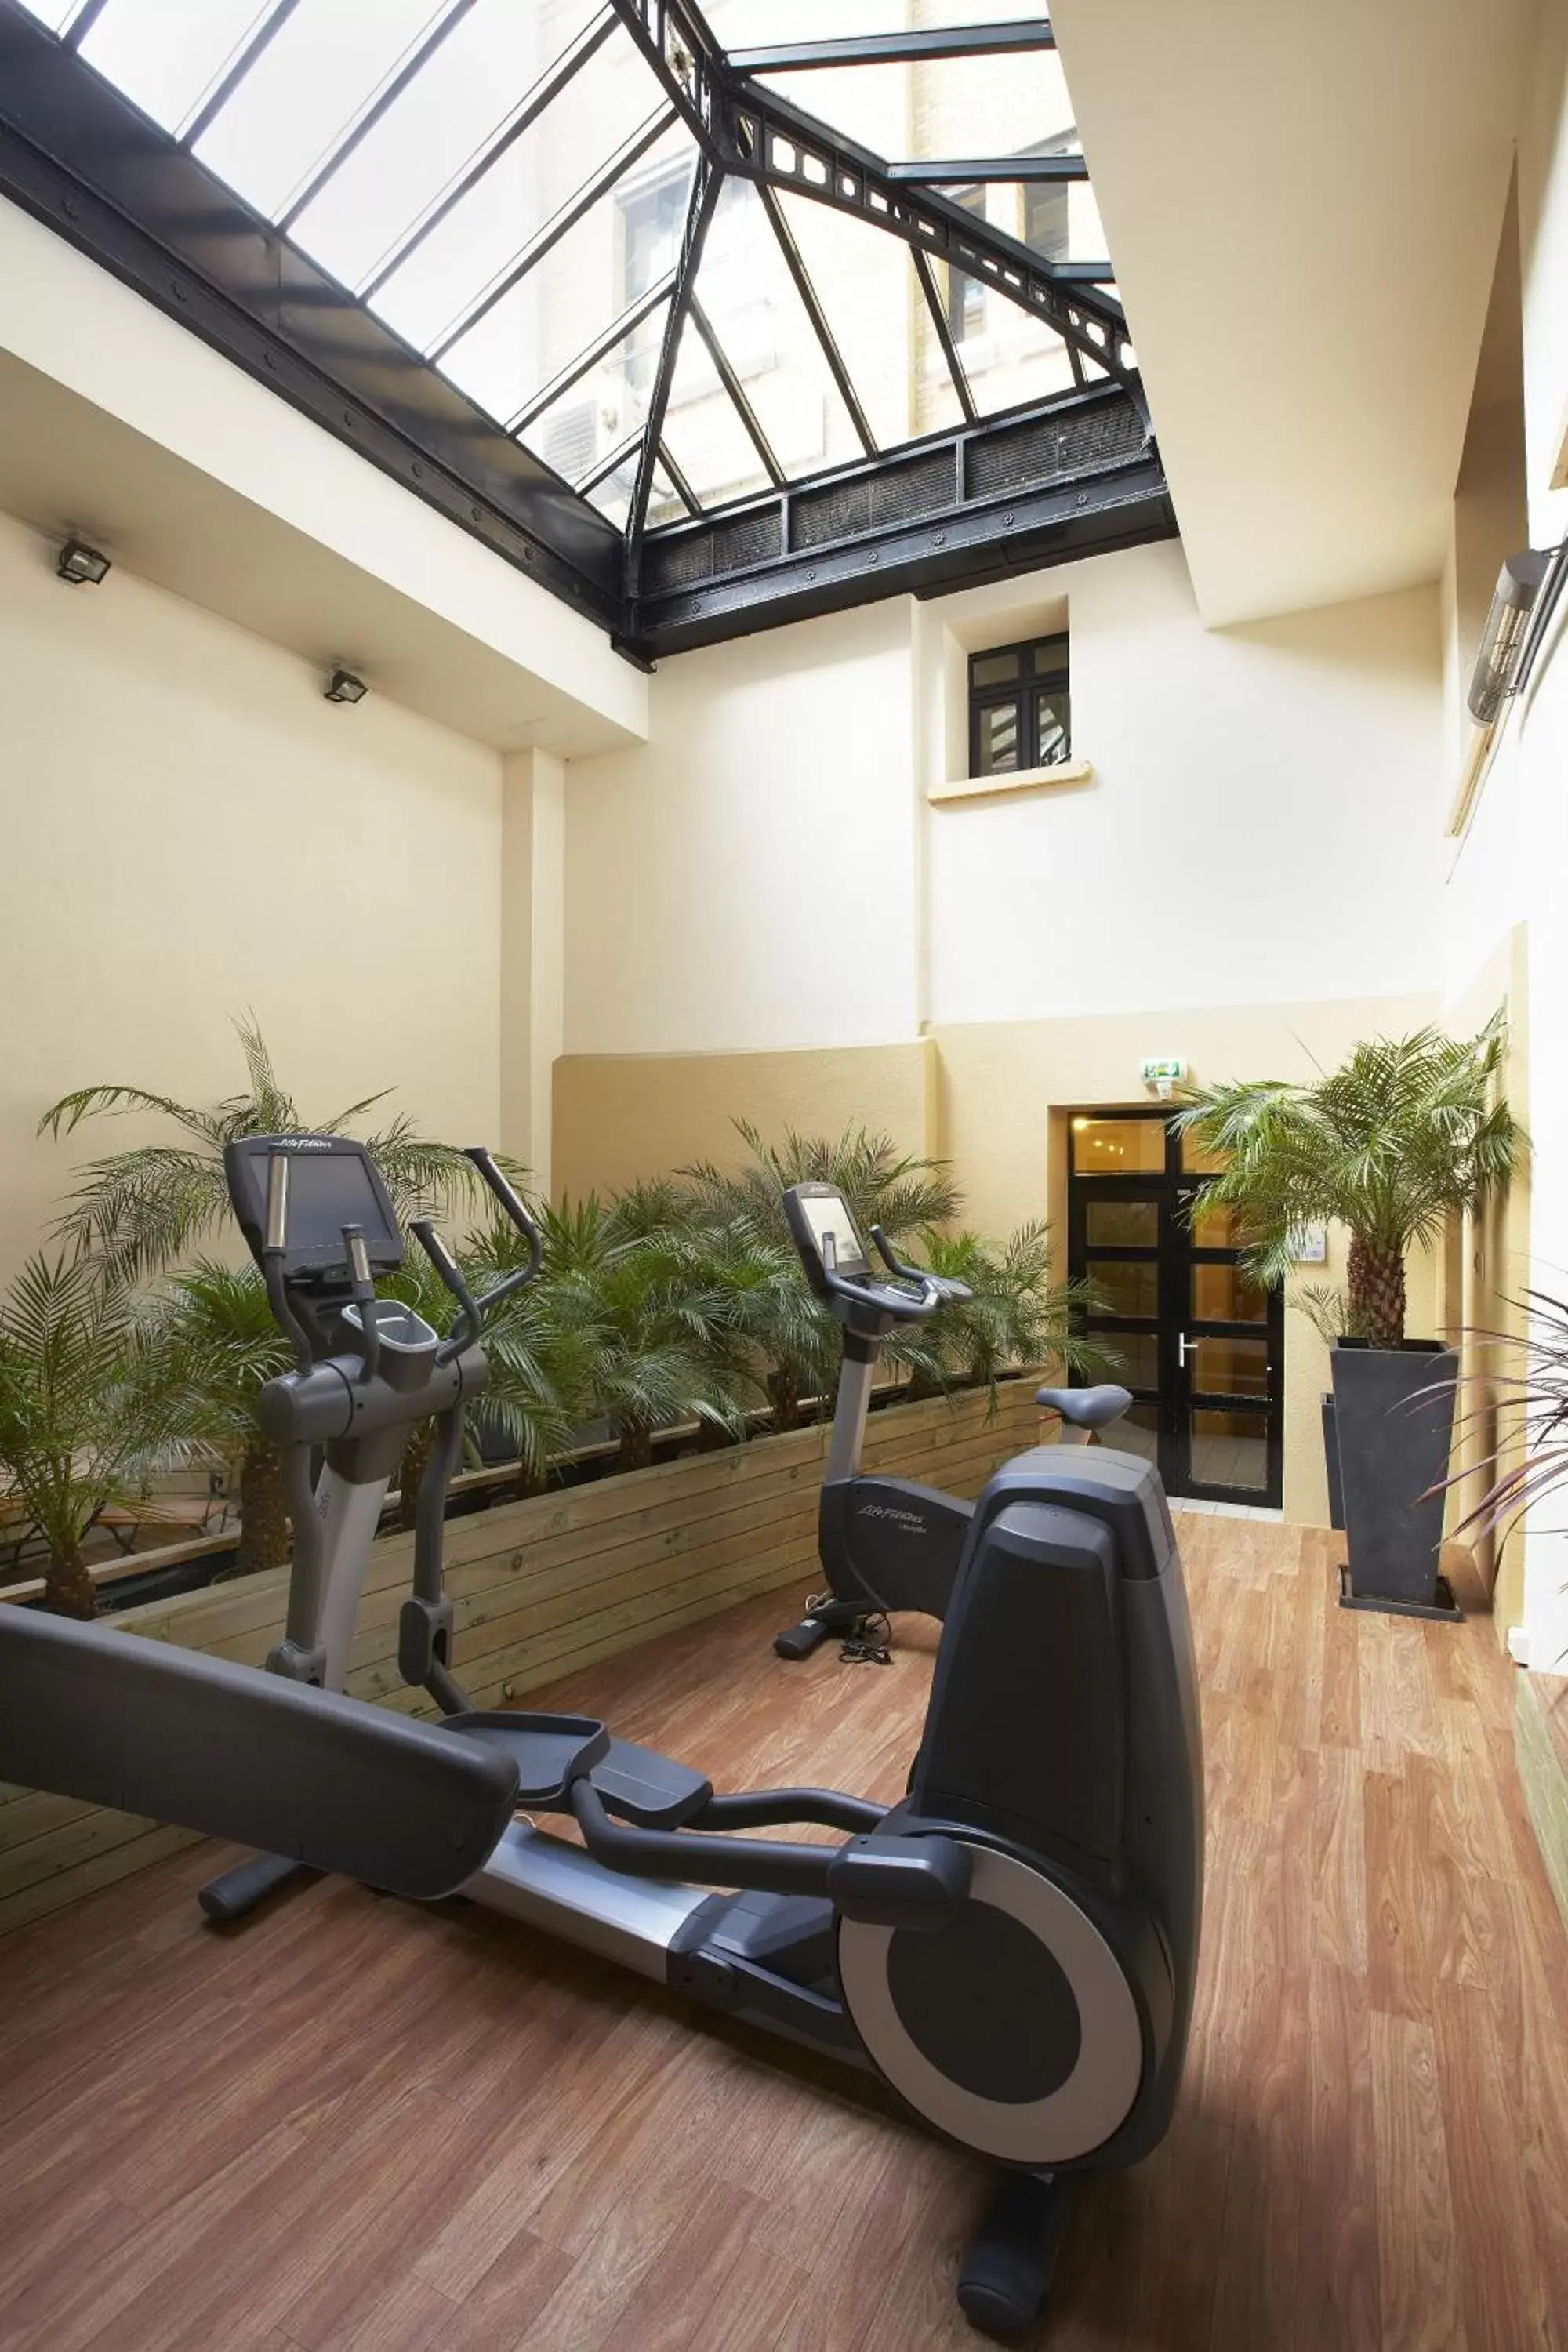 Fitness centre/facilities, Fitness Center/Facilities in Citadines Saint-Germain-des-Prés Paris